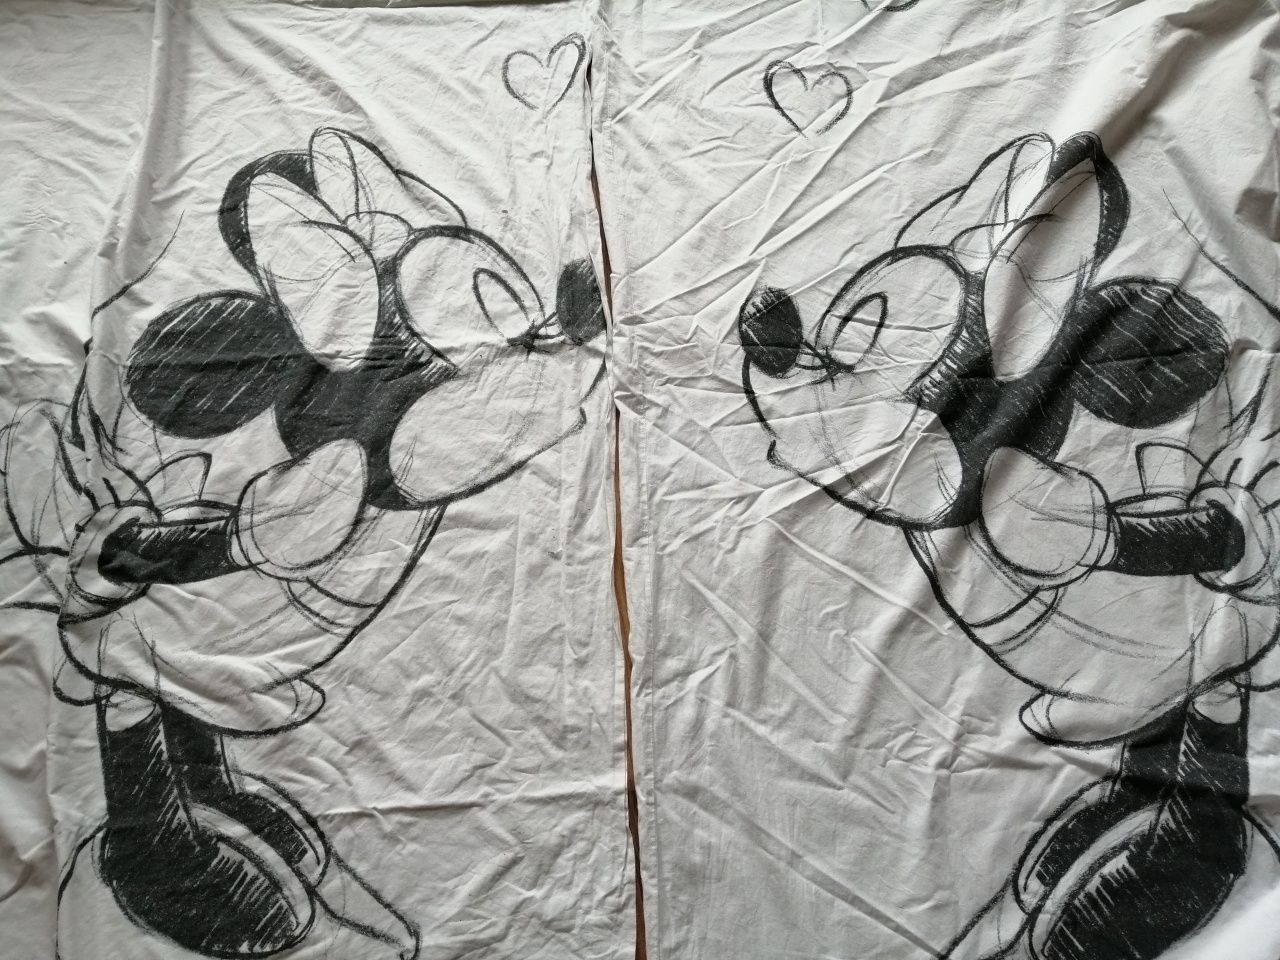 Pościel bawełniana / 2 komplety Disney 122x200 cm, 75x75 cm, biala